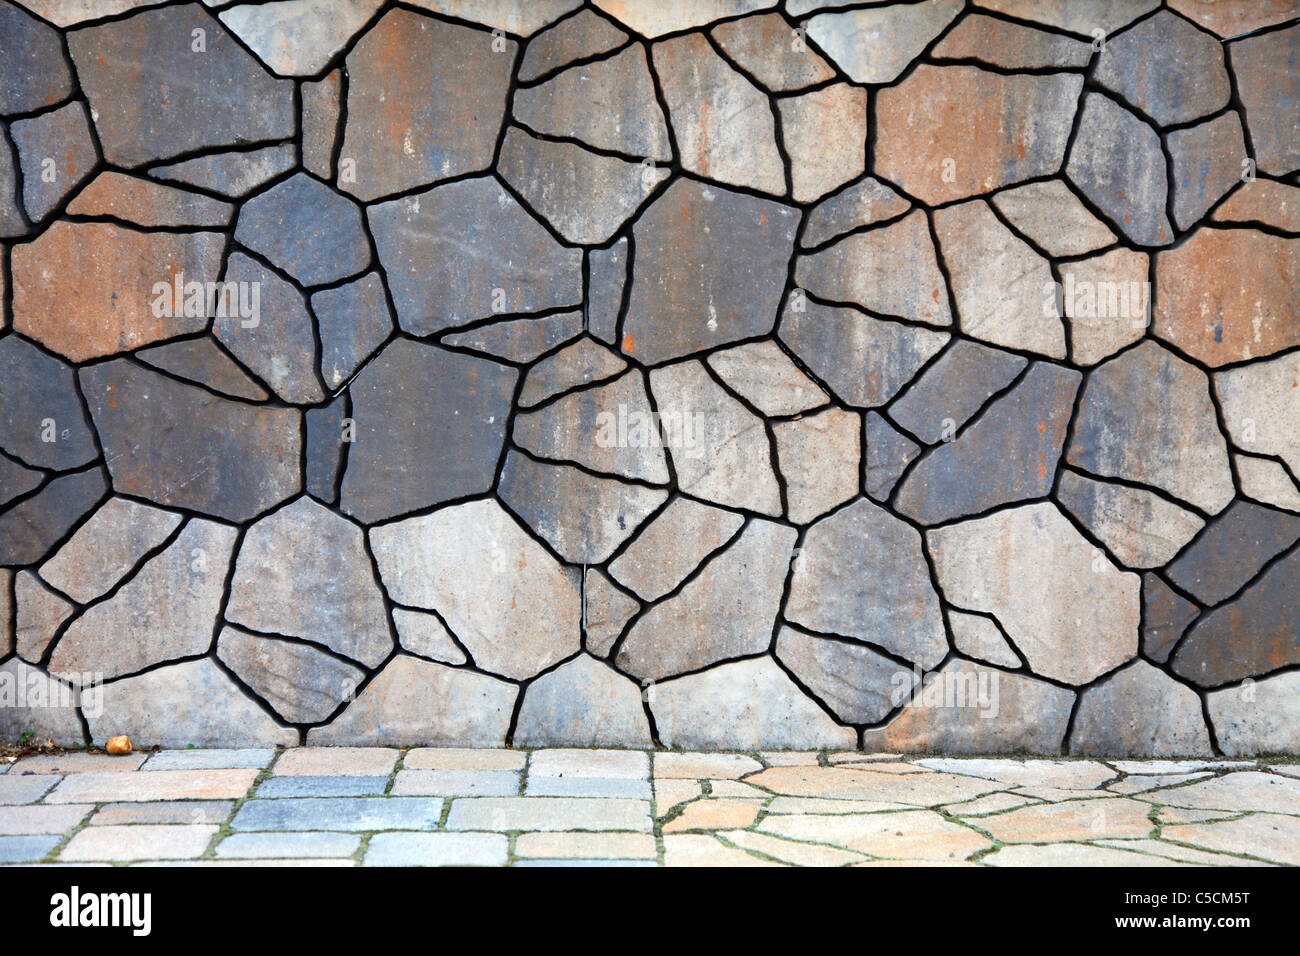 Le sol pierreux, différents modèles, type de pierres. Couvre Plancher, d'arrière-plan Banque D'Images